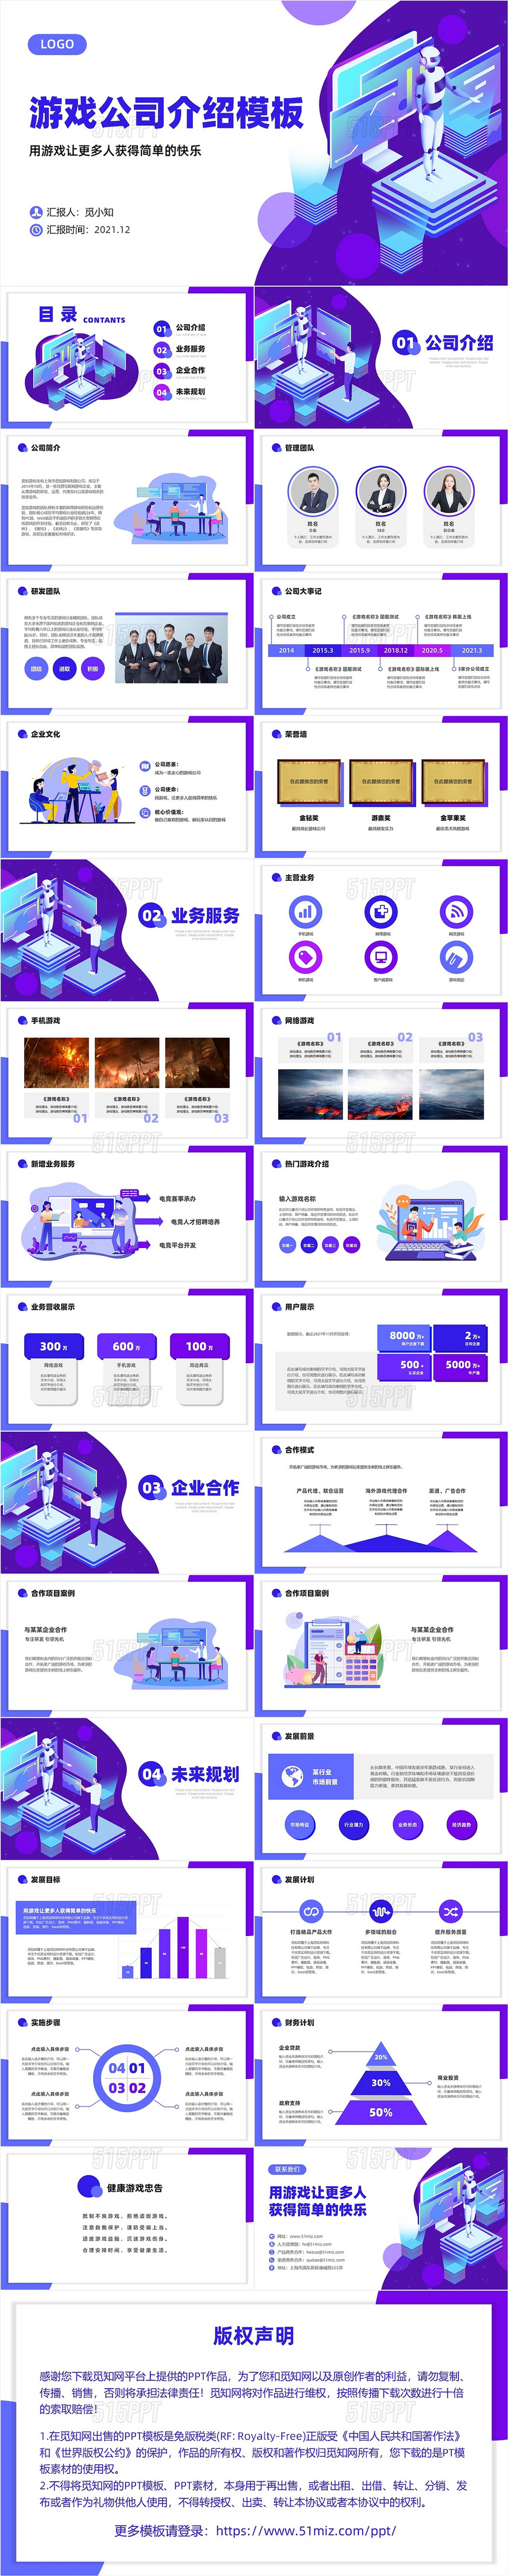 蓝紫2.5D卡通插画商务游戏公司宣传介绍PPT模板公司介绍